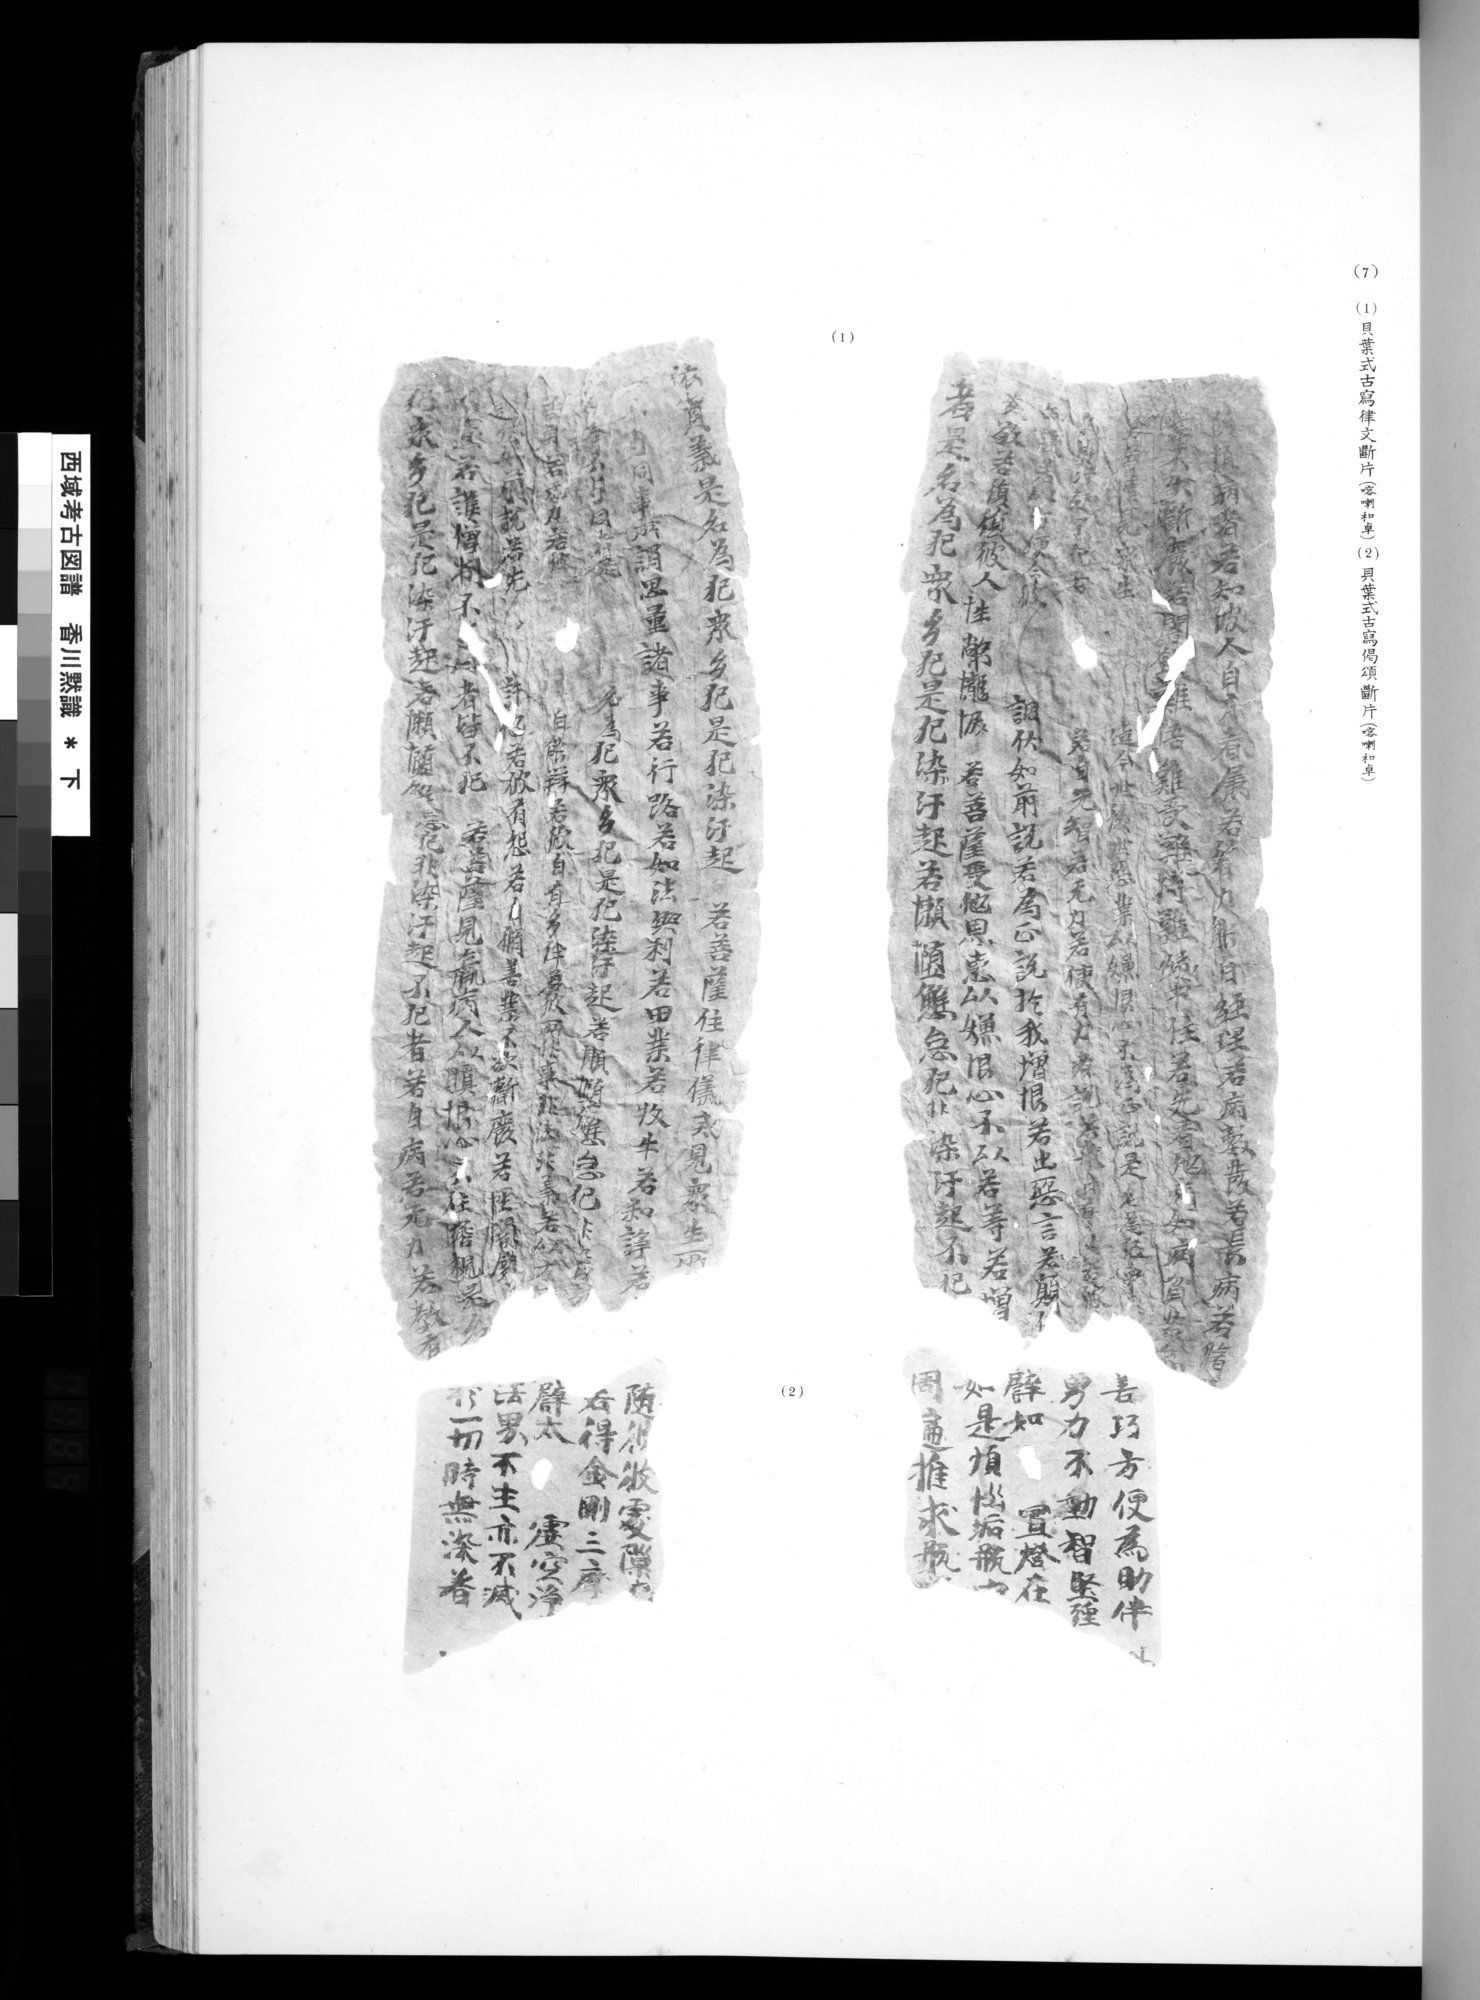 西域考古図譜 : vol.2 / 167 ページ（白黒高解像度画像）